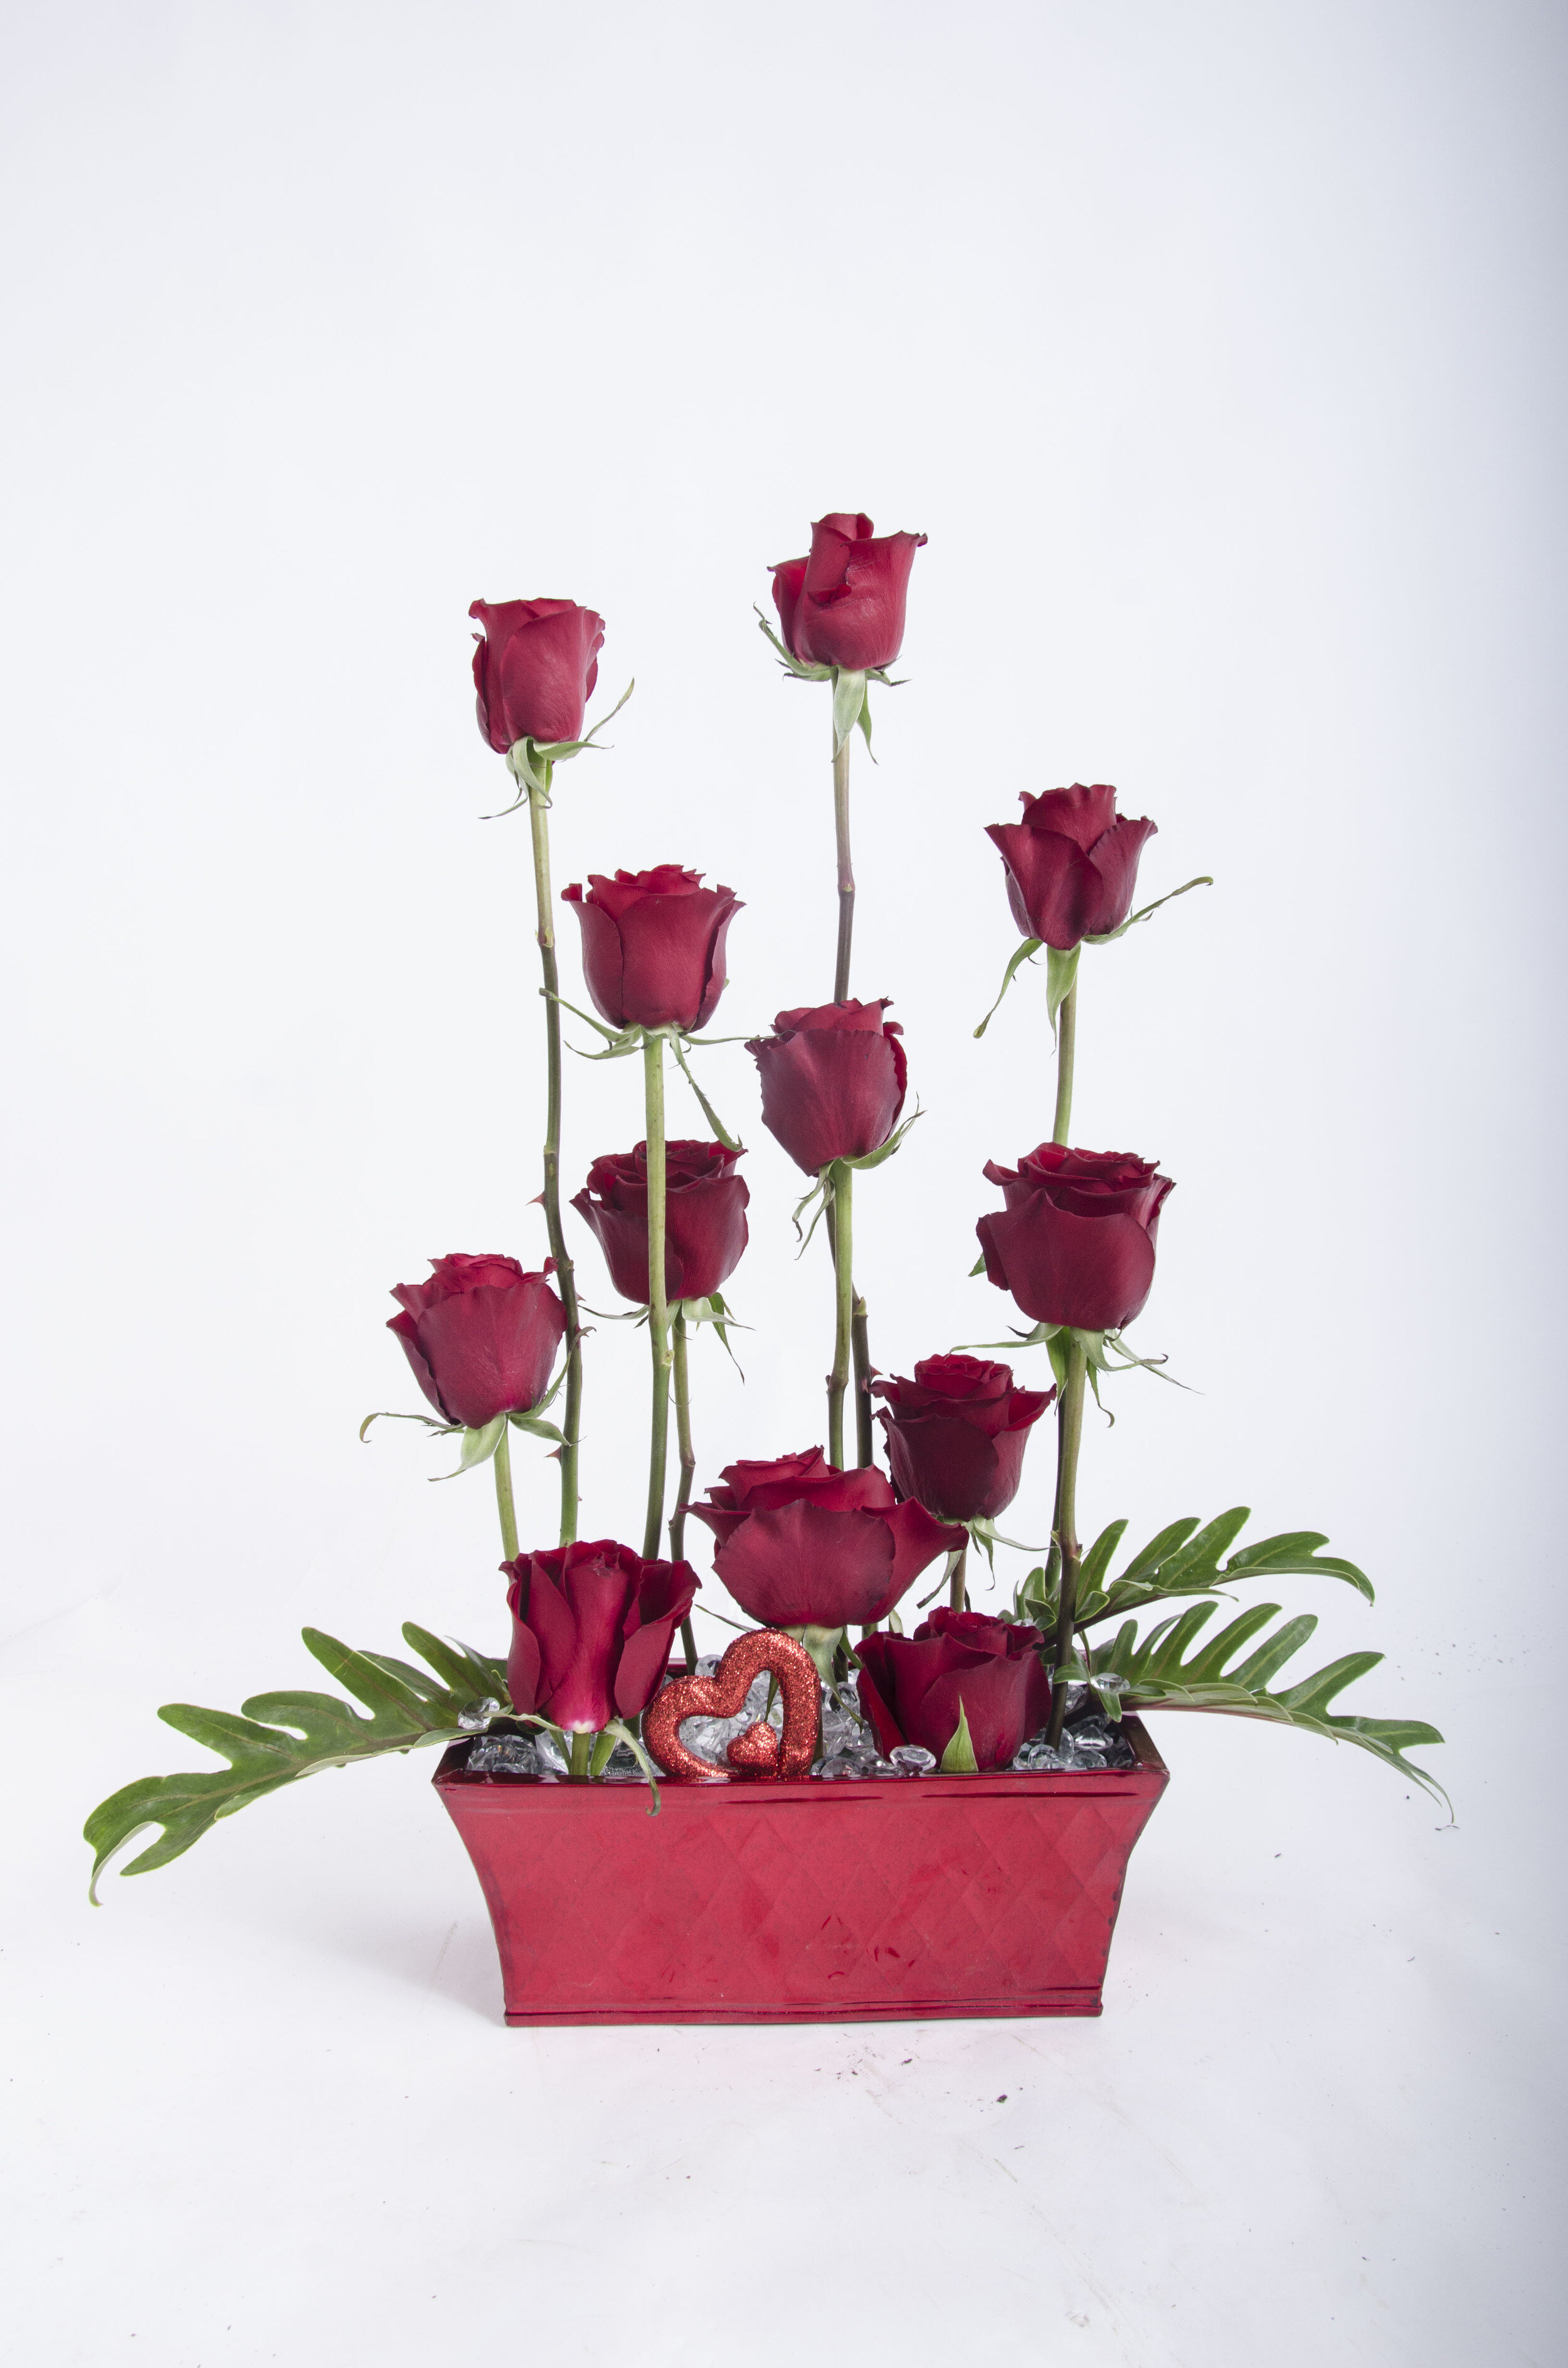 Unique Roses For Your Unique Valentine